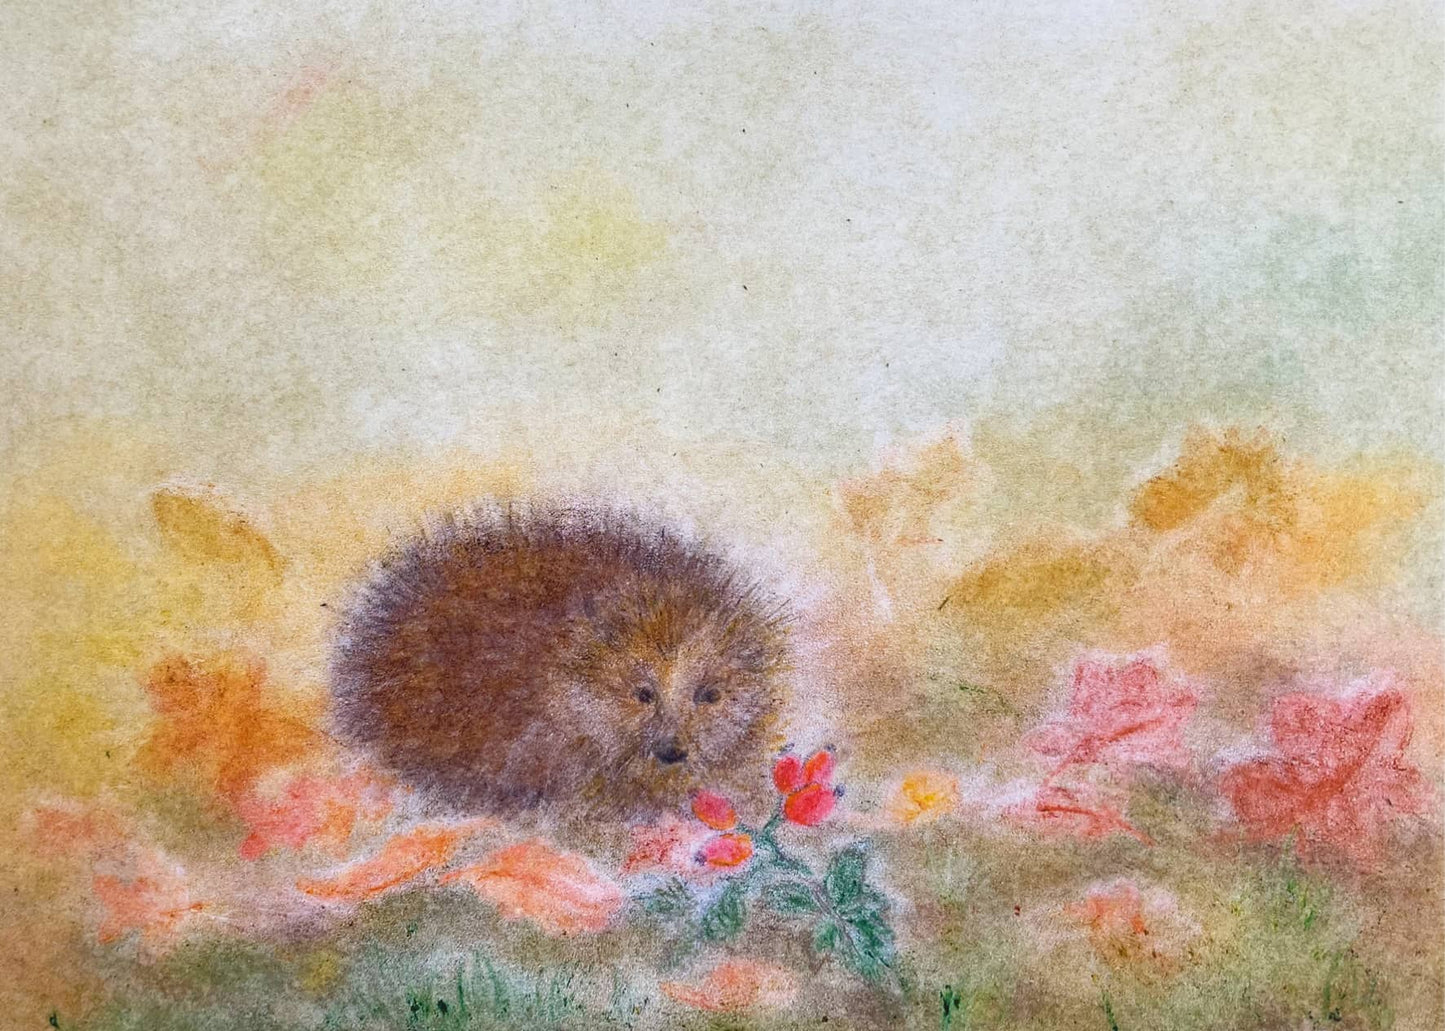 Seccorell-Postkarte "Igel im Herbst" mit einem niedlichen Igel, umgeben von buntem Laub und Hagebutten.